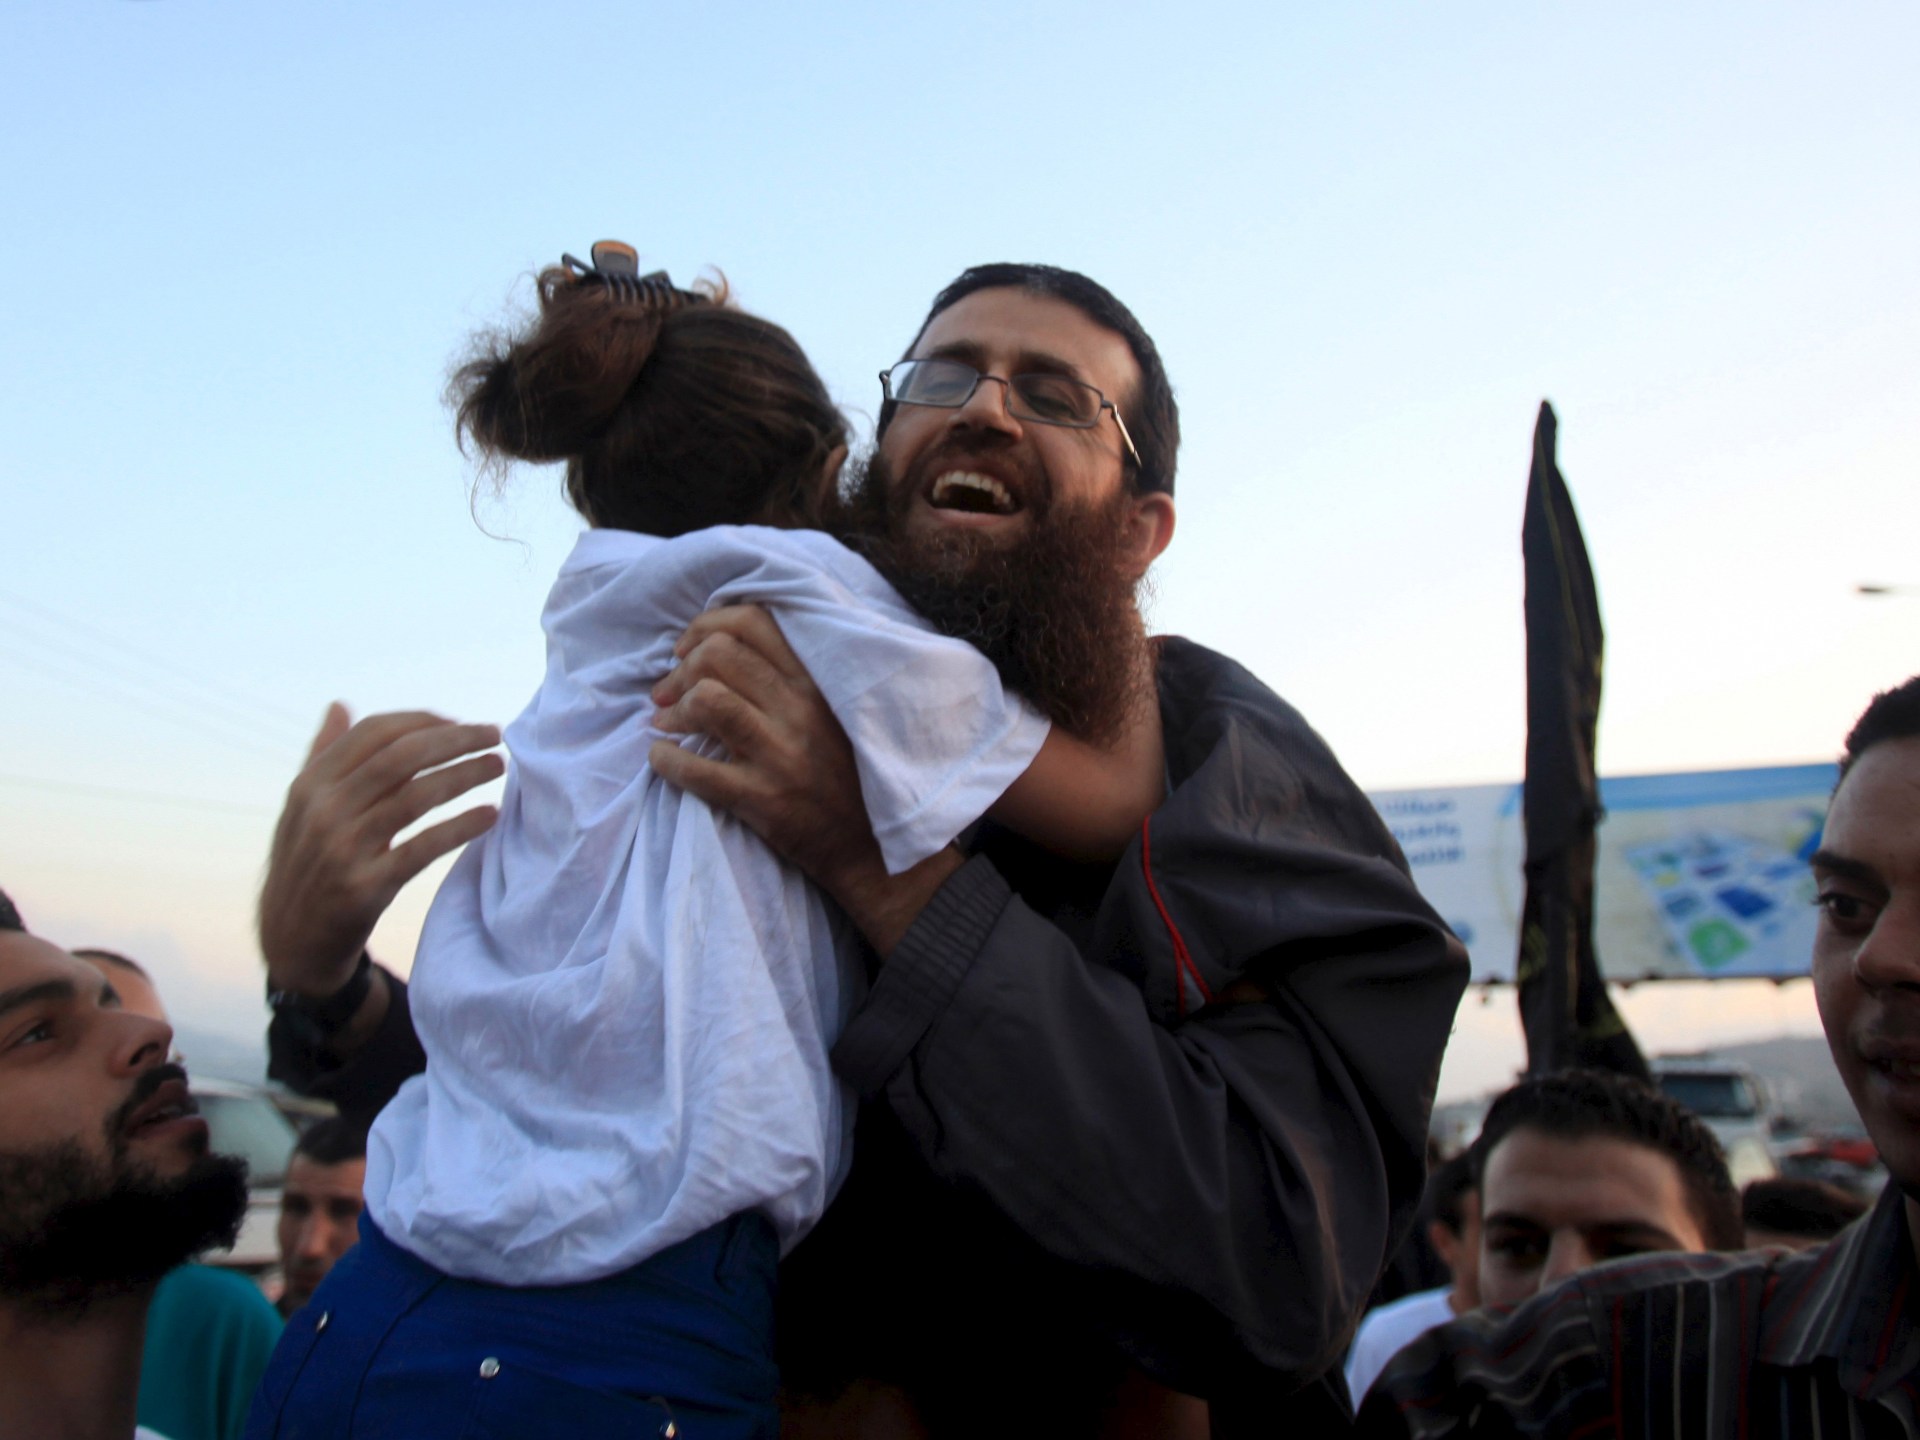 停戦はガザで行われ、パレスチナ人はハンガーストライカーの死に抗議している | イスラエル・パレスチナ紛争のニュース